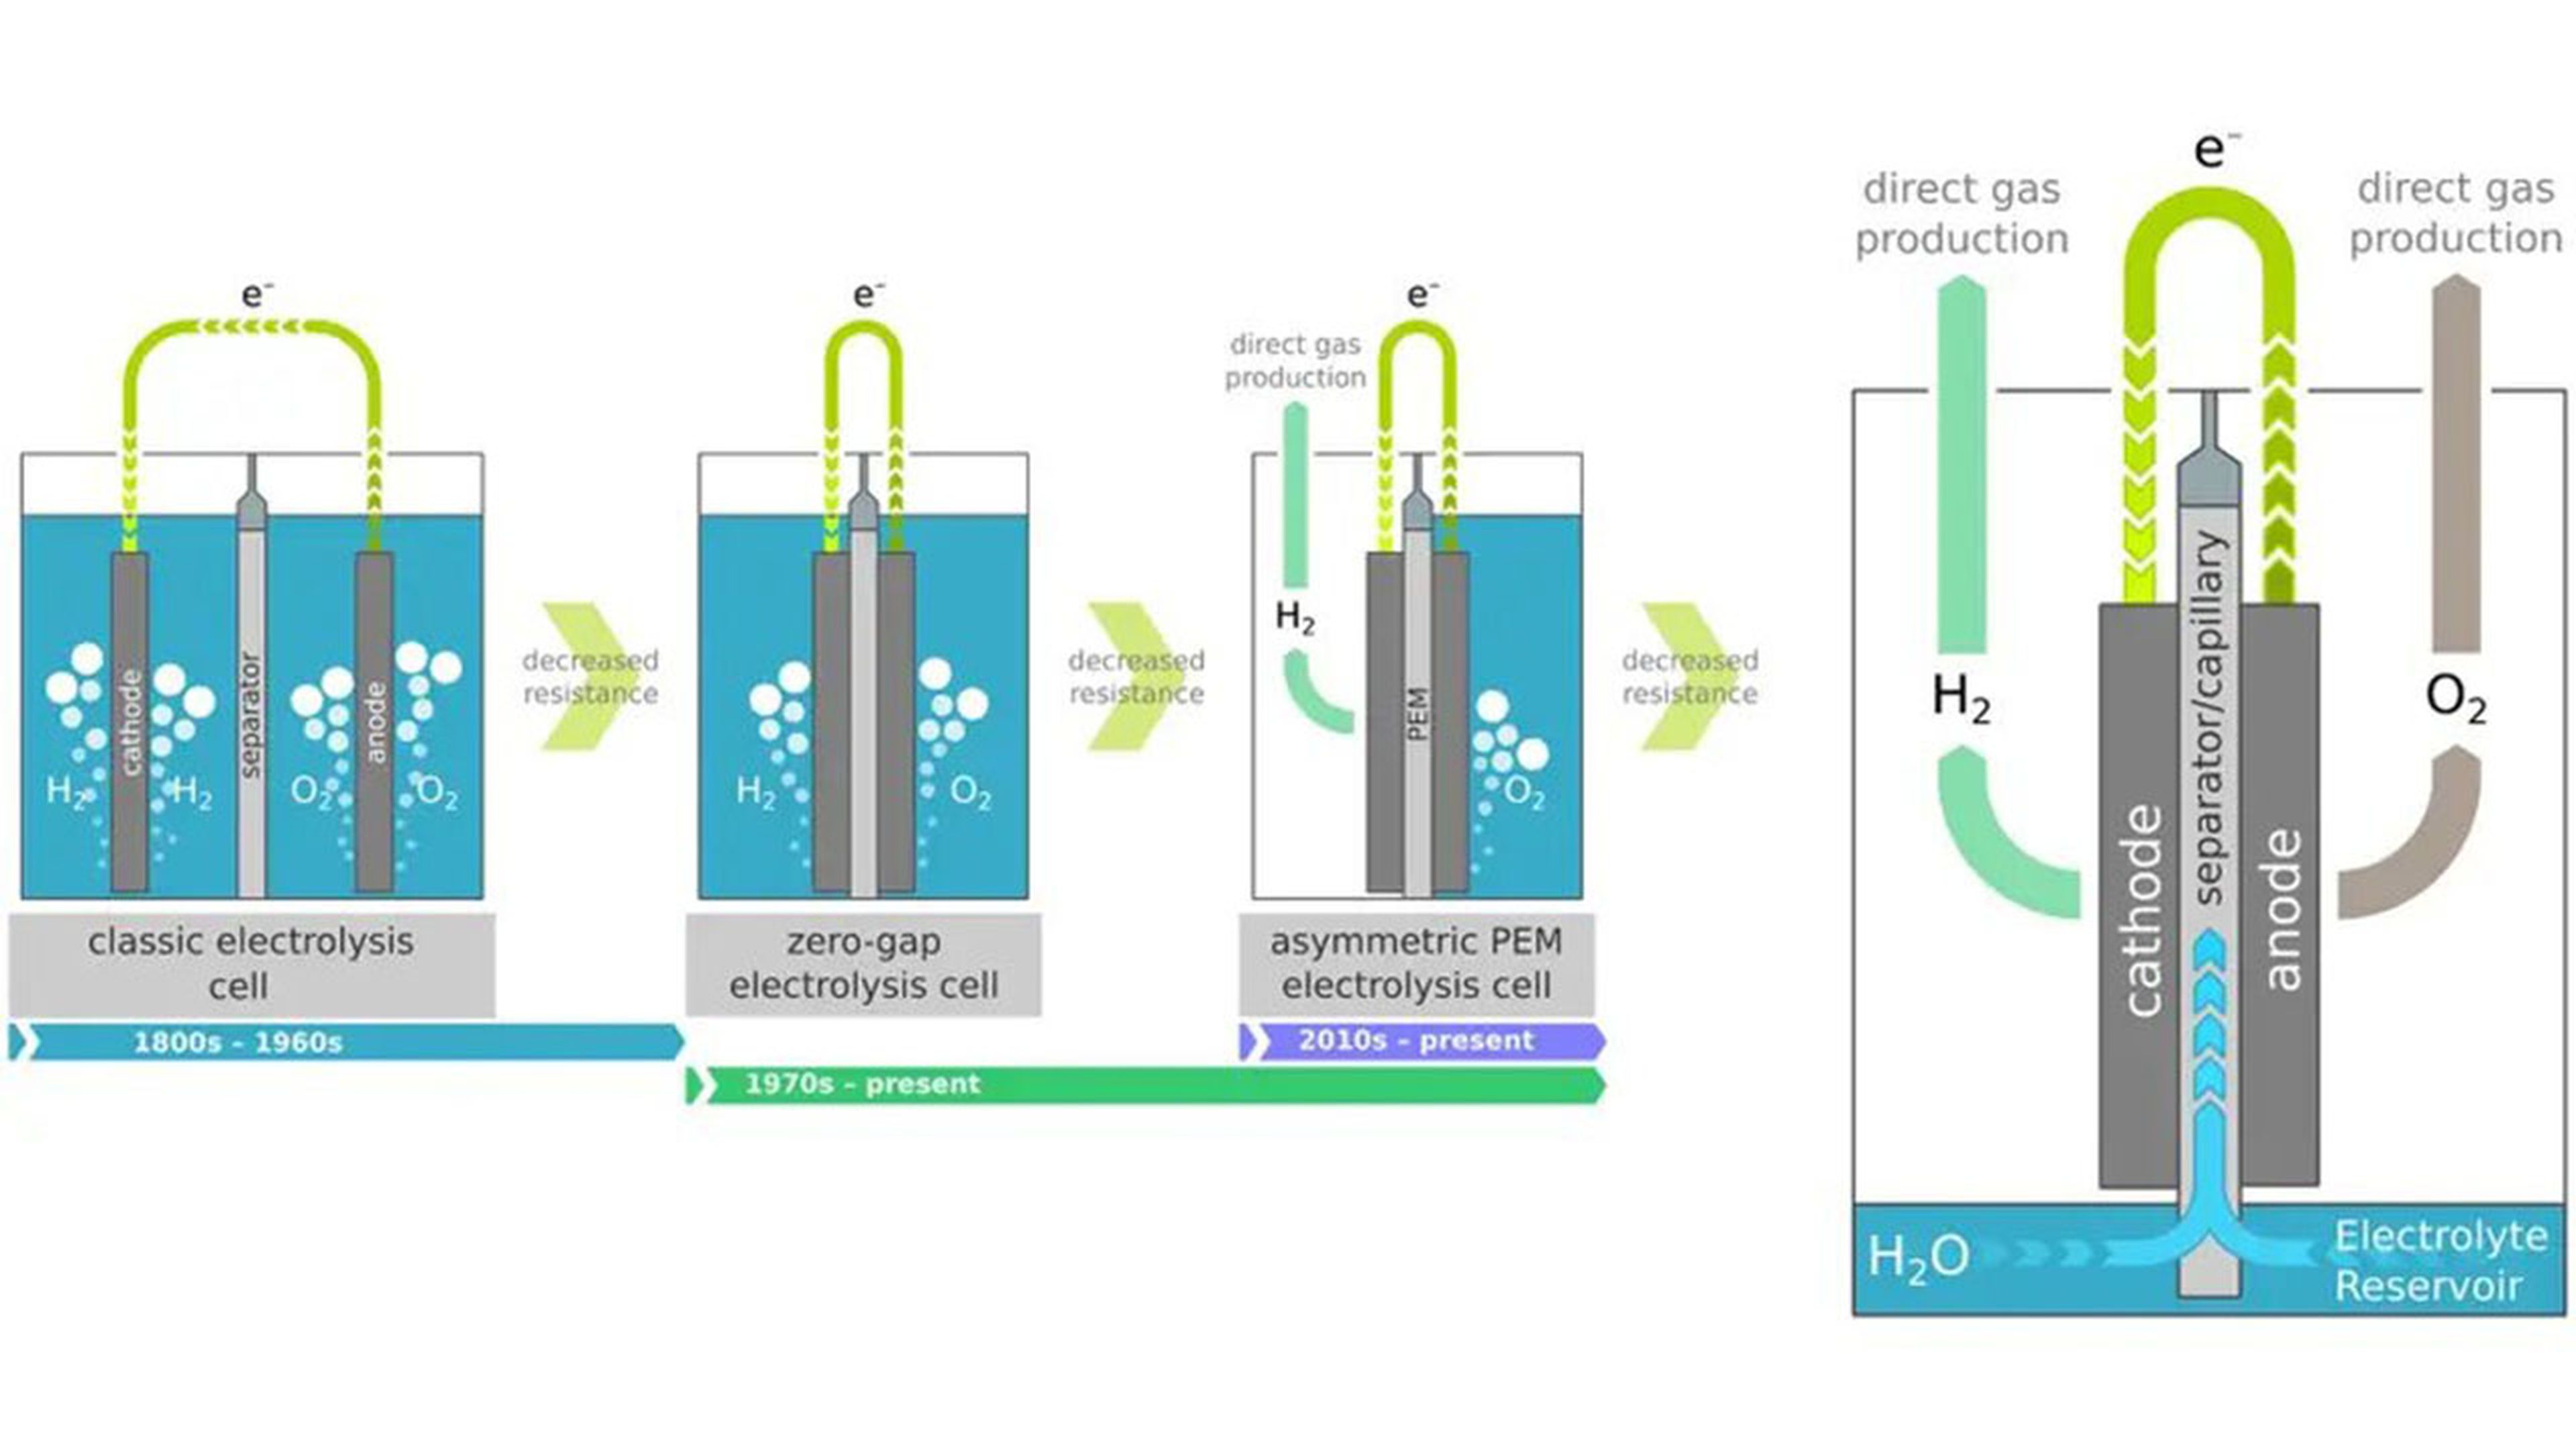 grafico de la combustion de hidrogeno